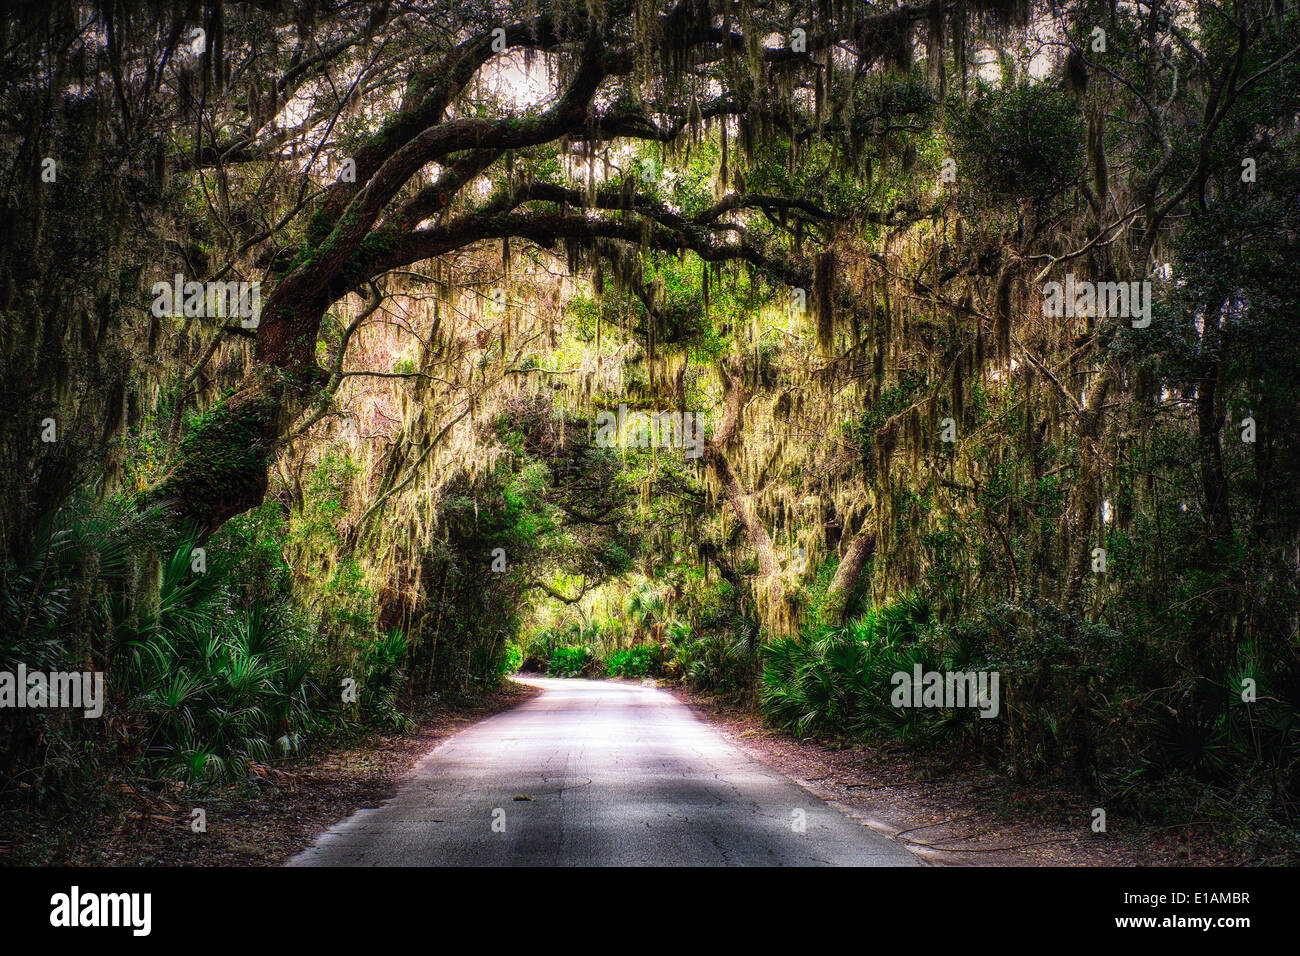 Plantation du Sud route avec arbre avec de la mousse espagnole suspendues à des arbres, Amelia Island, Nassau County, Floride Banque D'Images